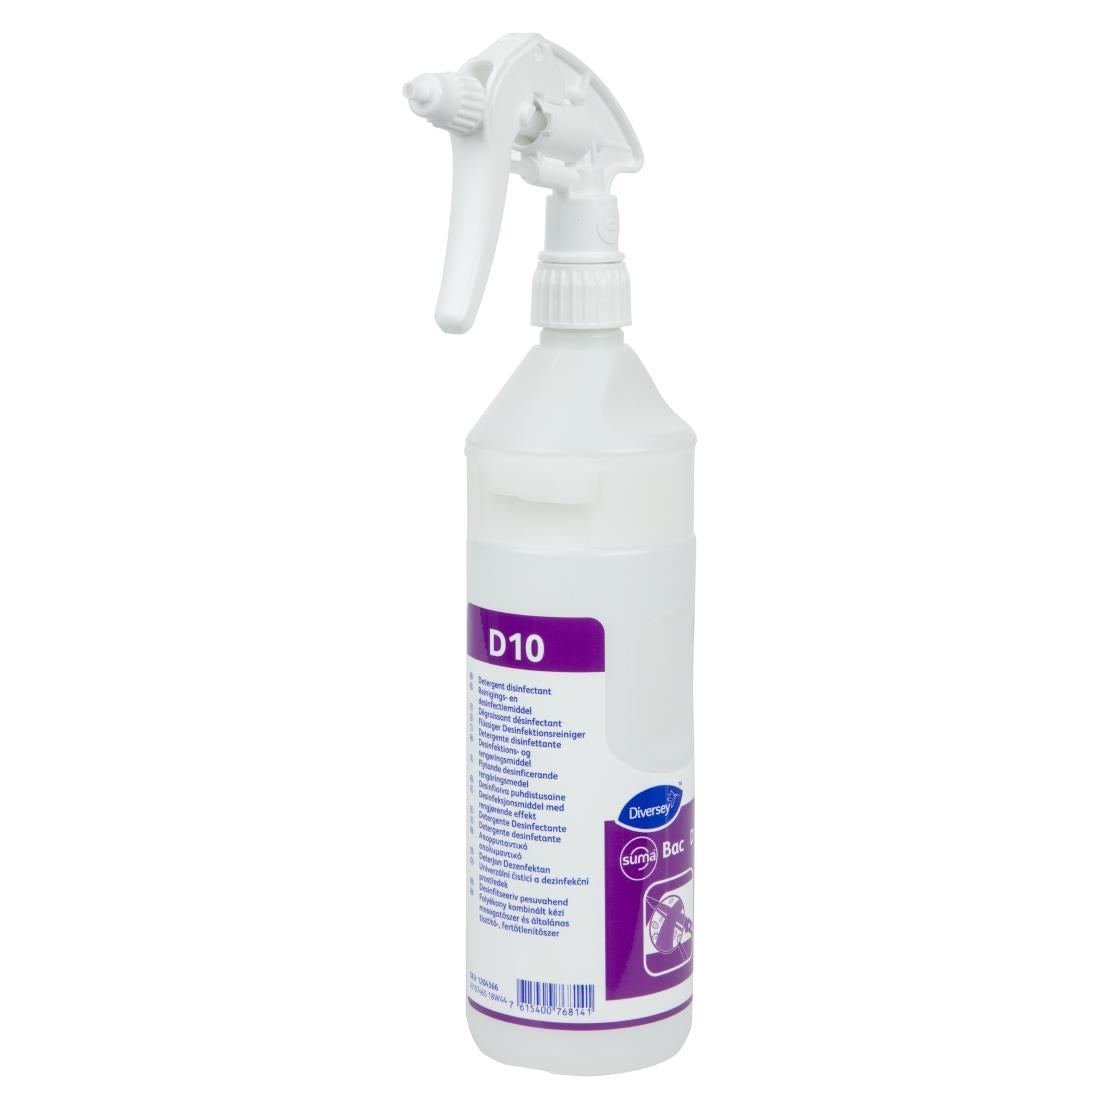 Suma D10 Cleaner and Sanitiser Refill Bottles 750ml (2 Pack)